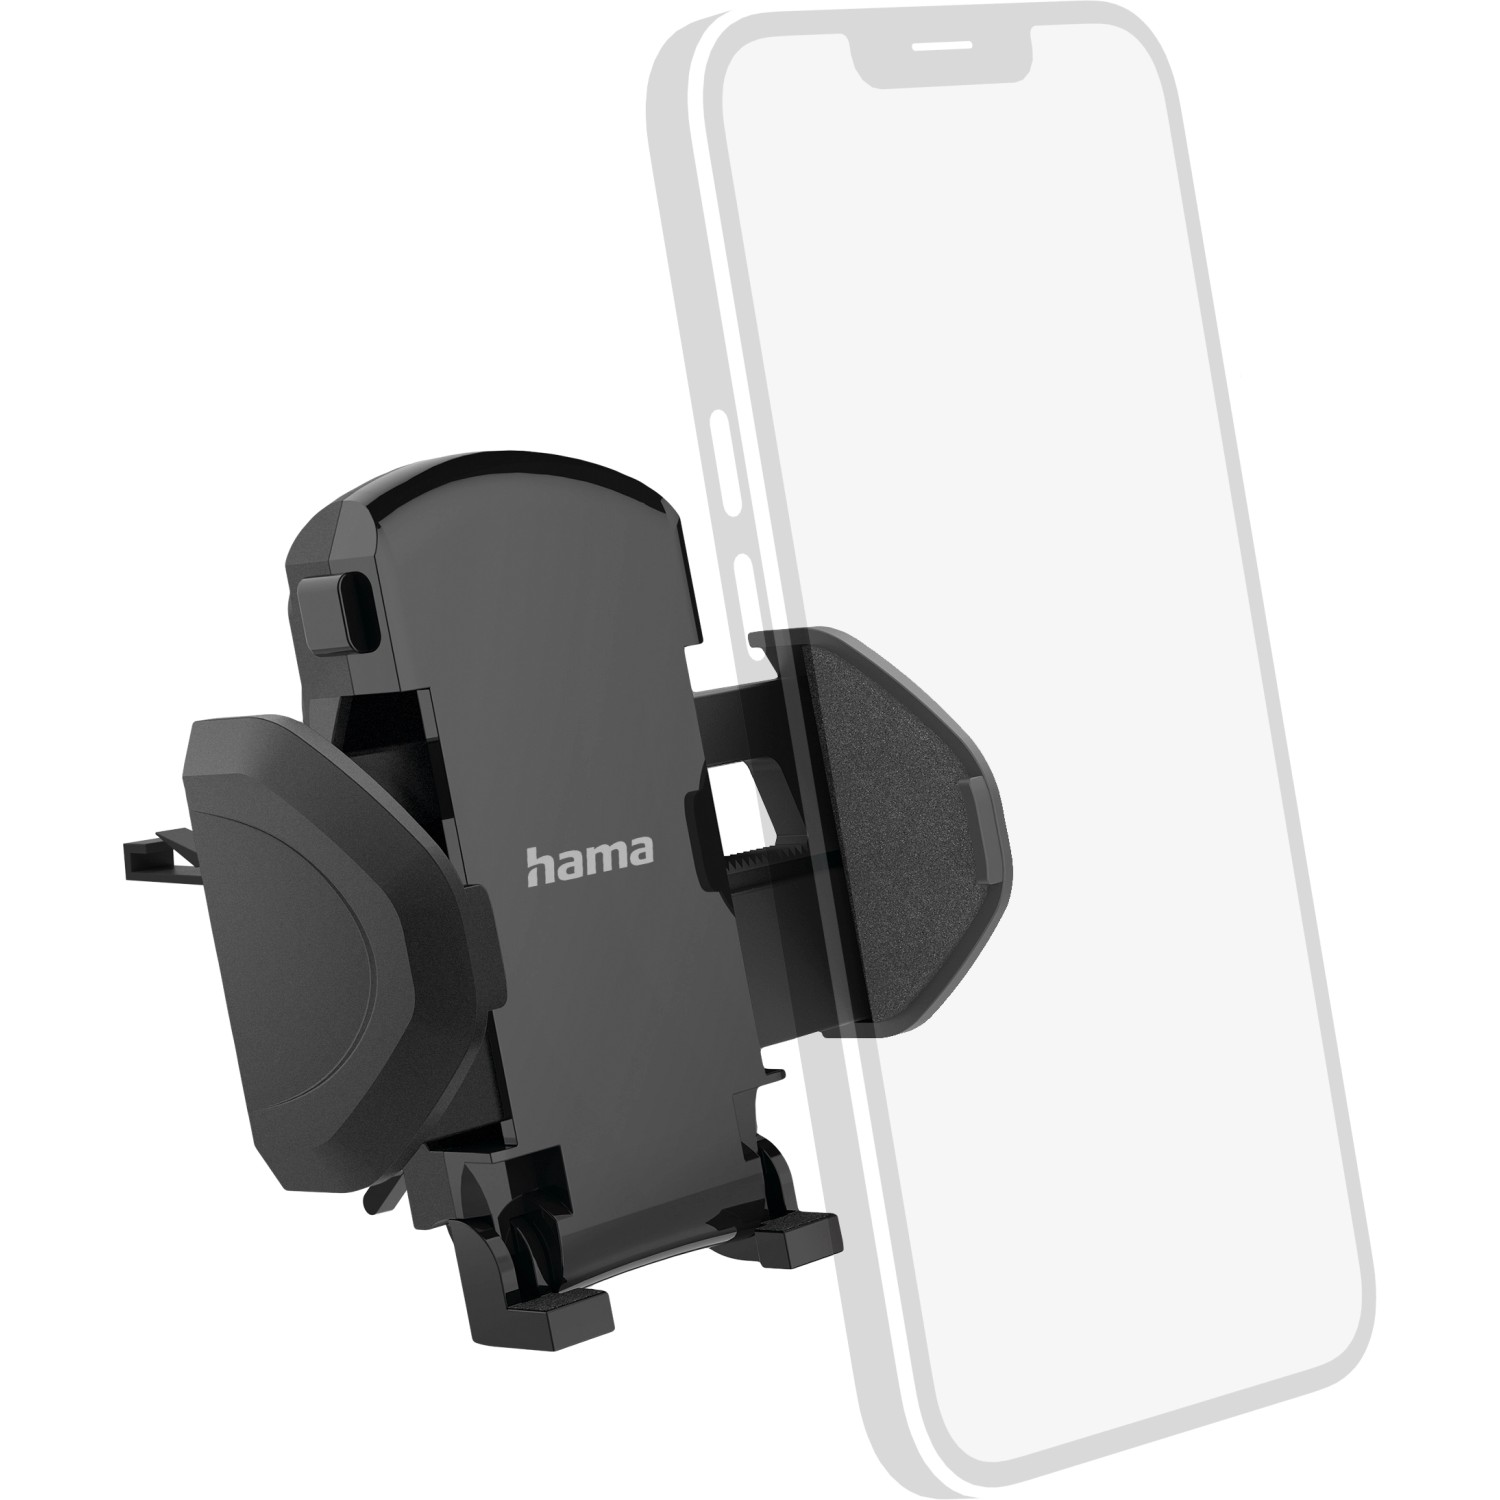 Hama Auto-Handyhalterung Move für Lüftung Universal bis 9 cm Breite Schwarz  kaufen bei OBI